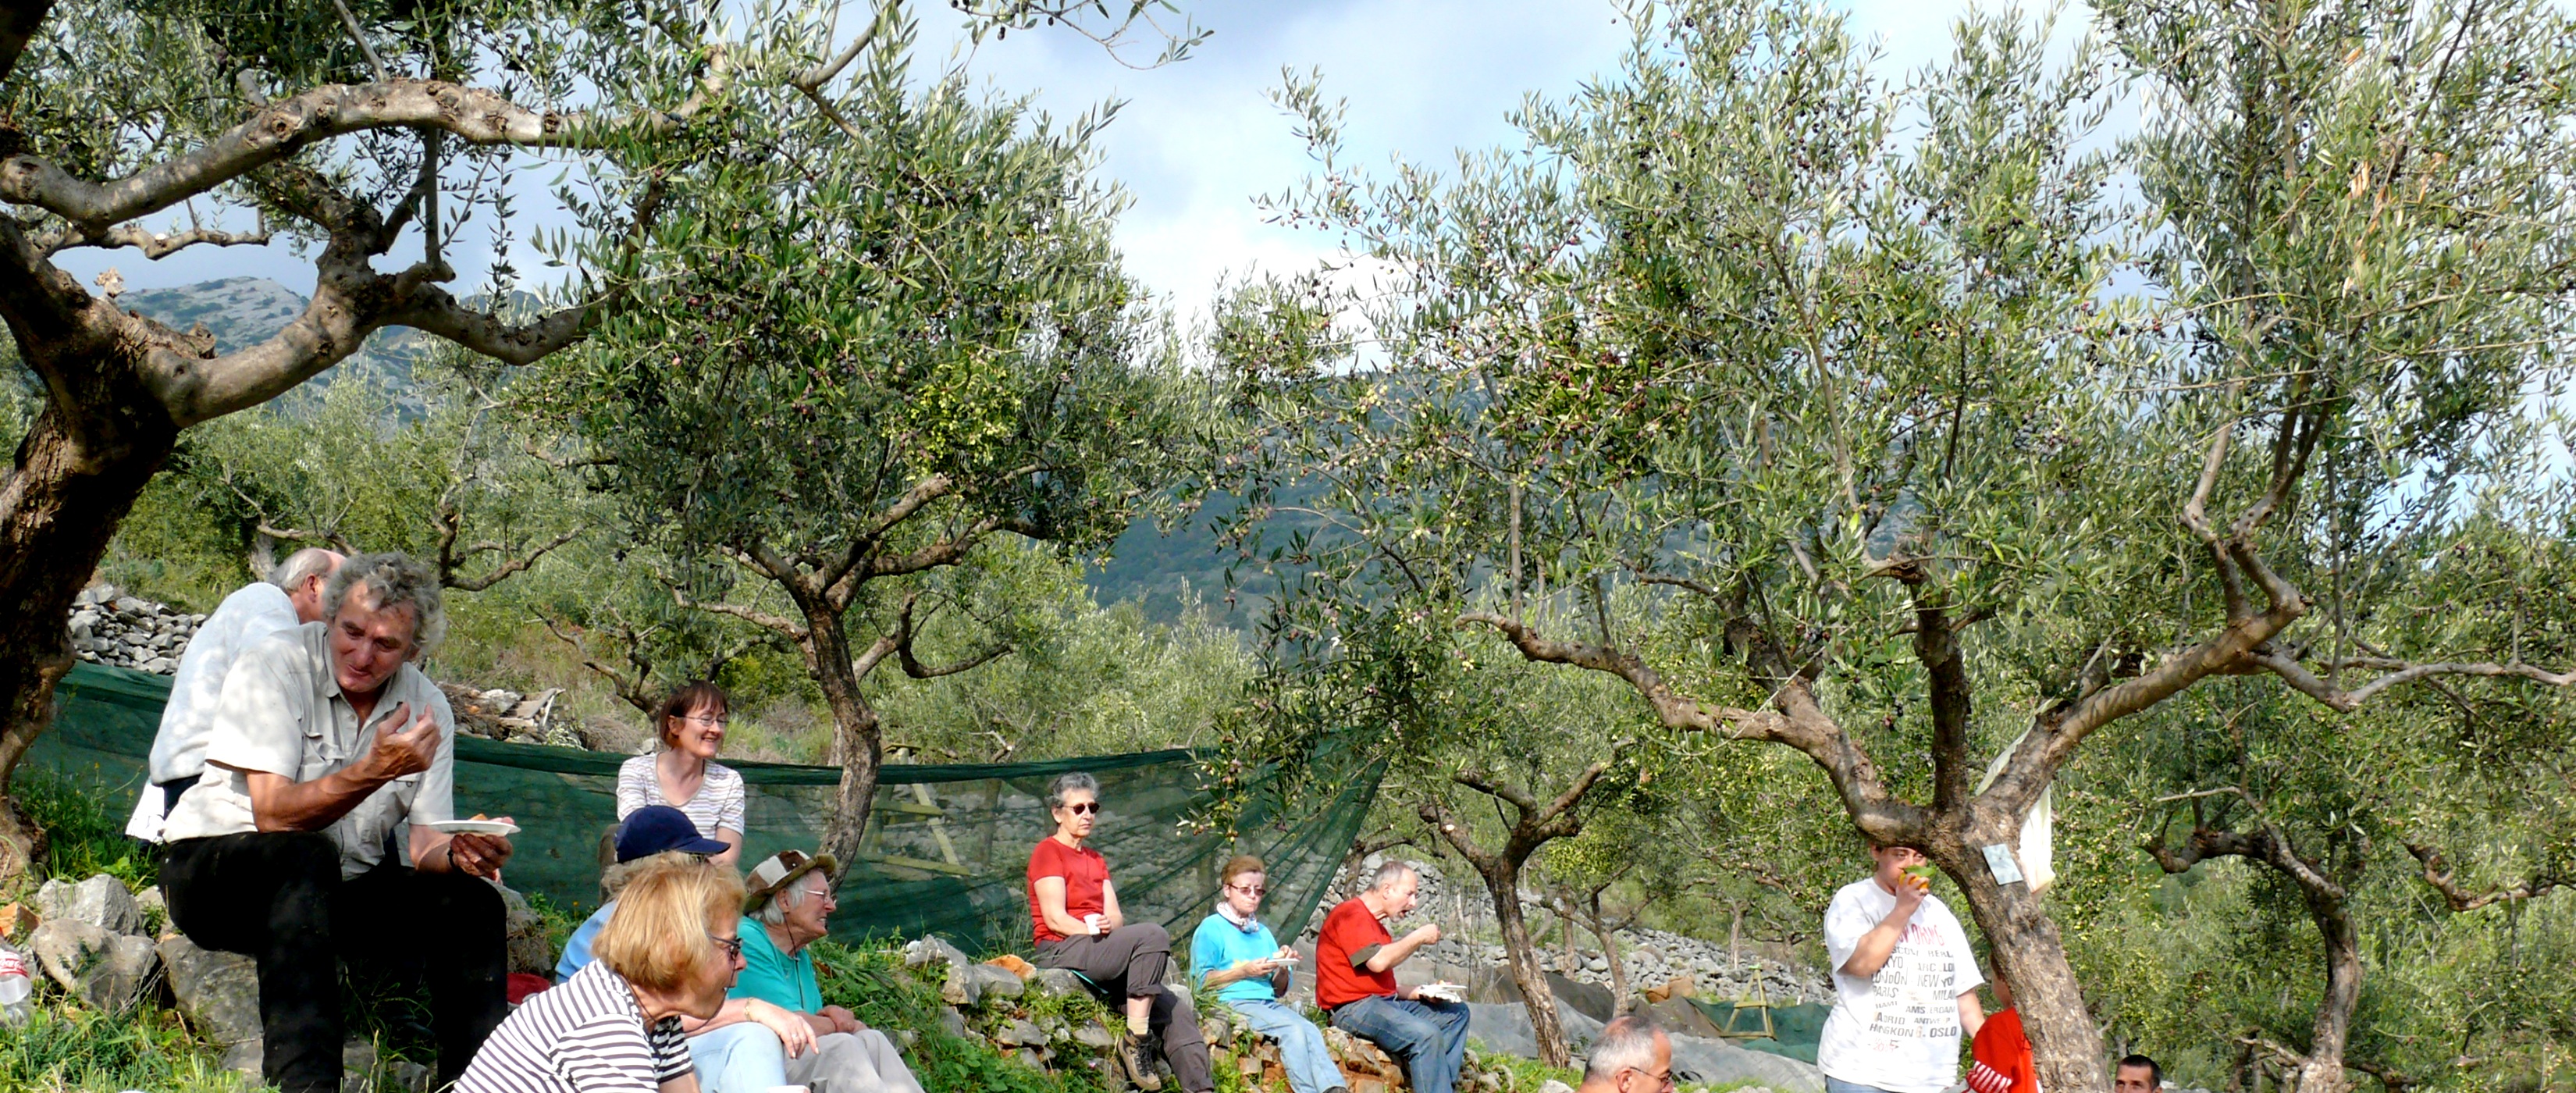 Picknick mit und unter Oliven - Lupe Reisen